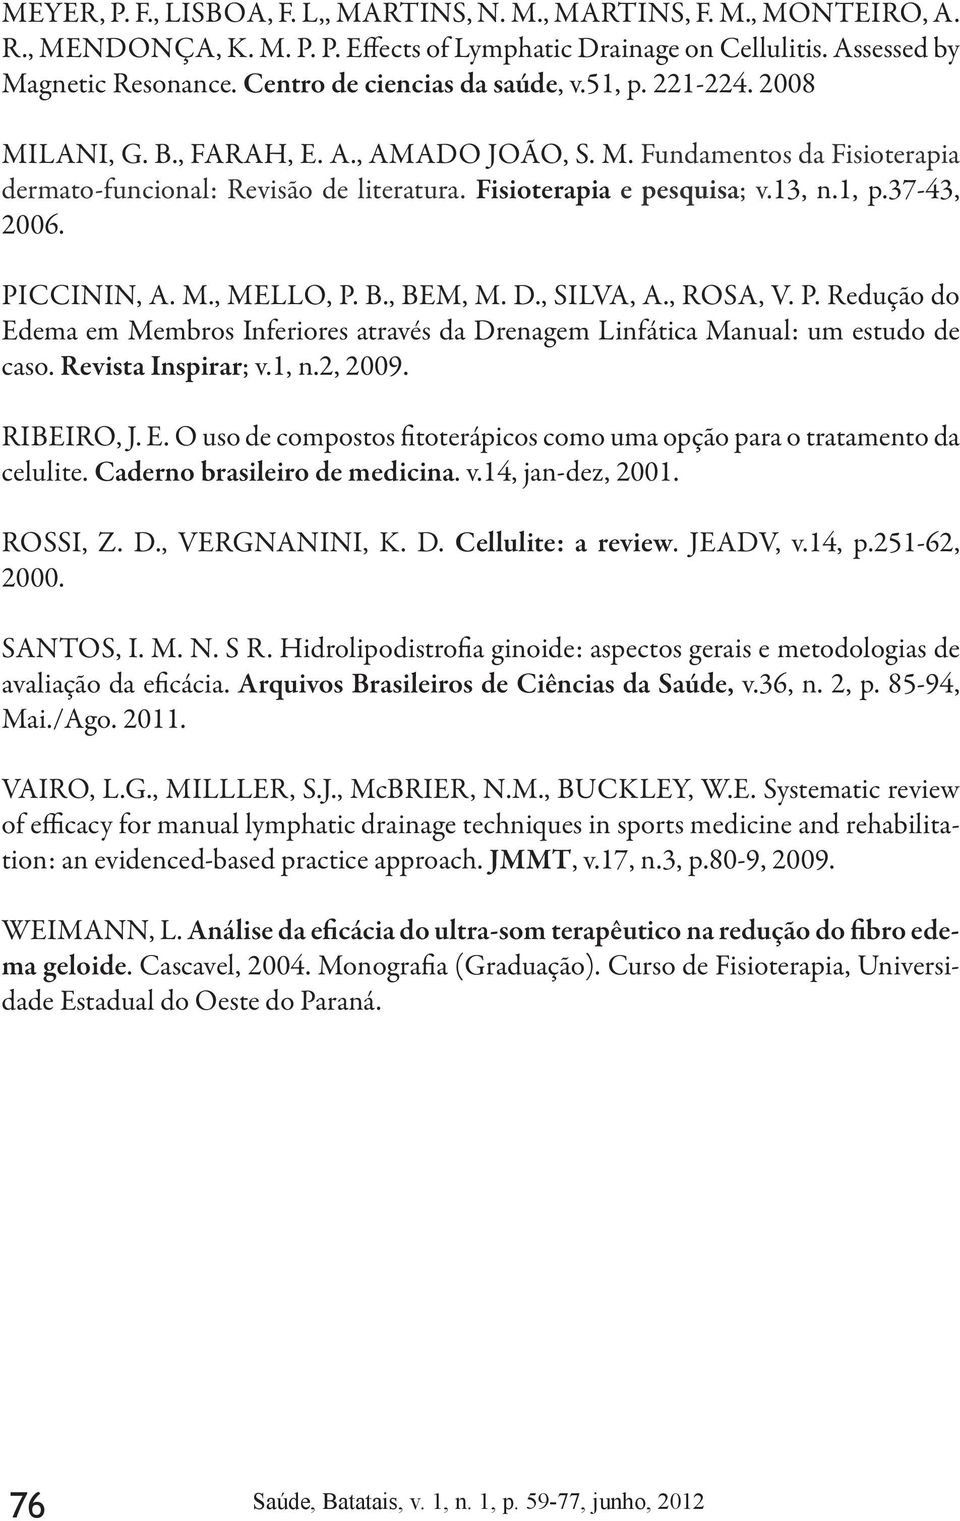 13, n.1, p.37-43, 2006. PICCININ, A. M., MELLO, P. B., BEM, M. D., SILVA, A., ROSA, V. P. Redução do Edema em Membros Inferiores através da Drenagem Linfática Manual: um estudo de caso.